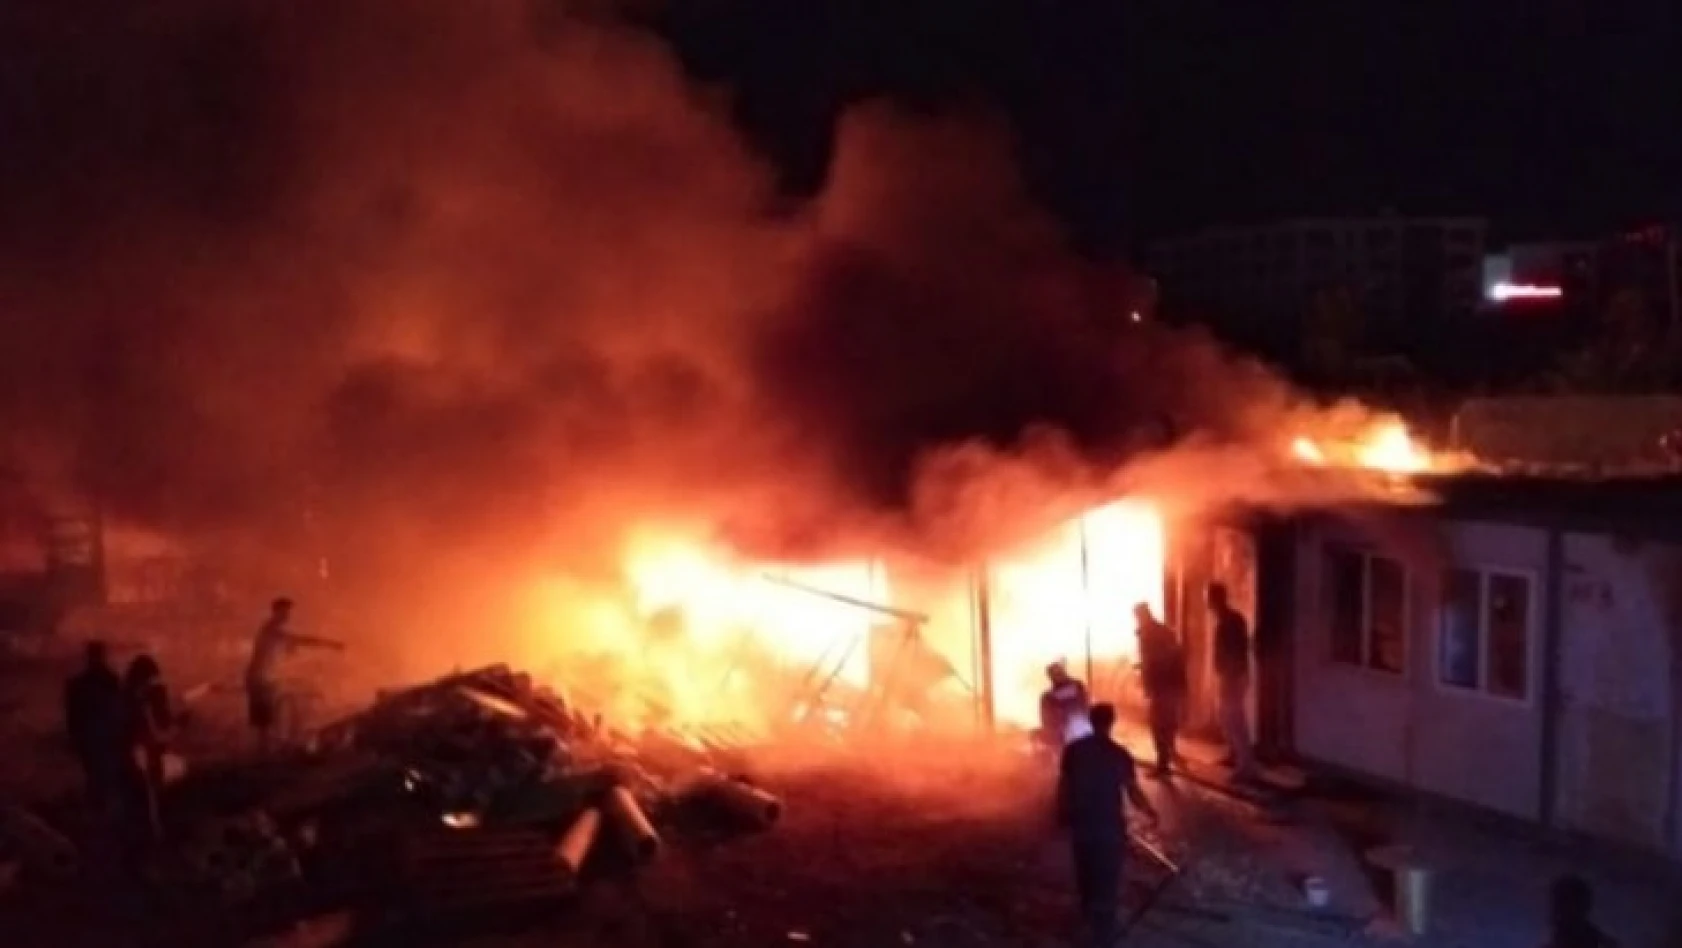 Elazığ'da işçilerin kaldığı konteynerde yangın